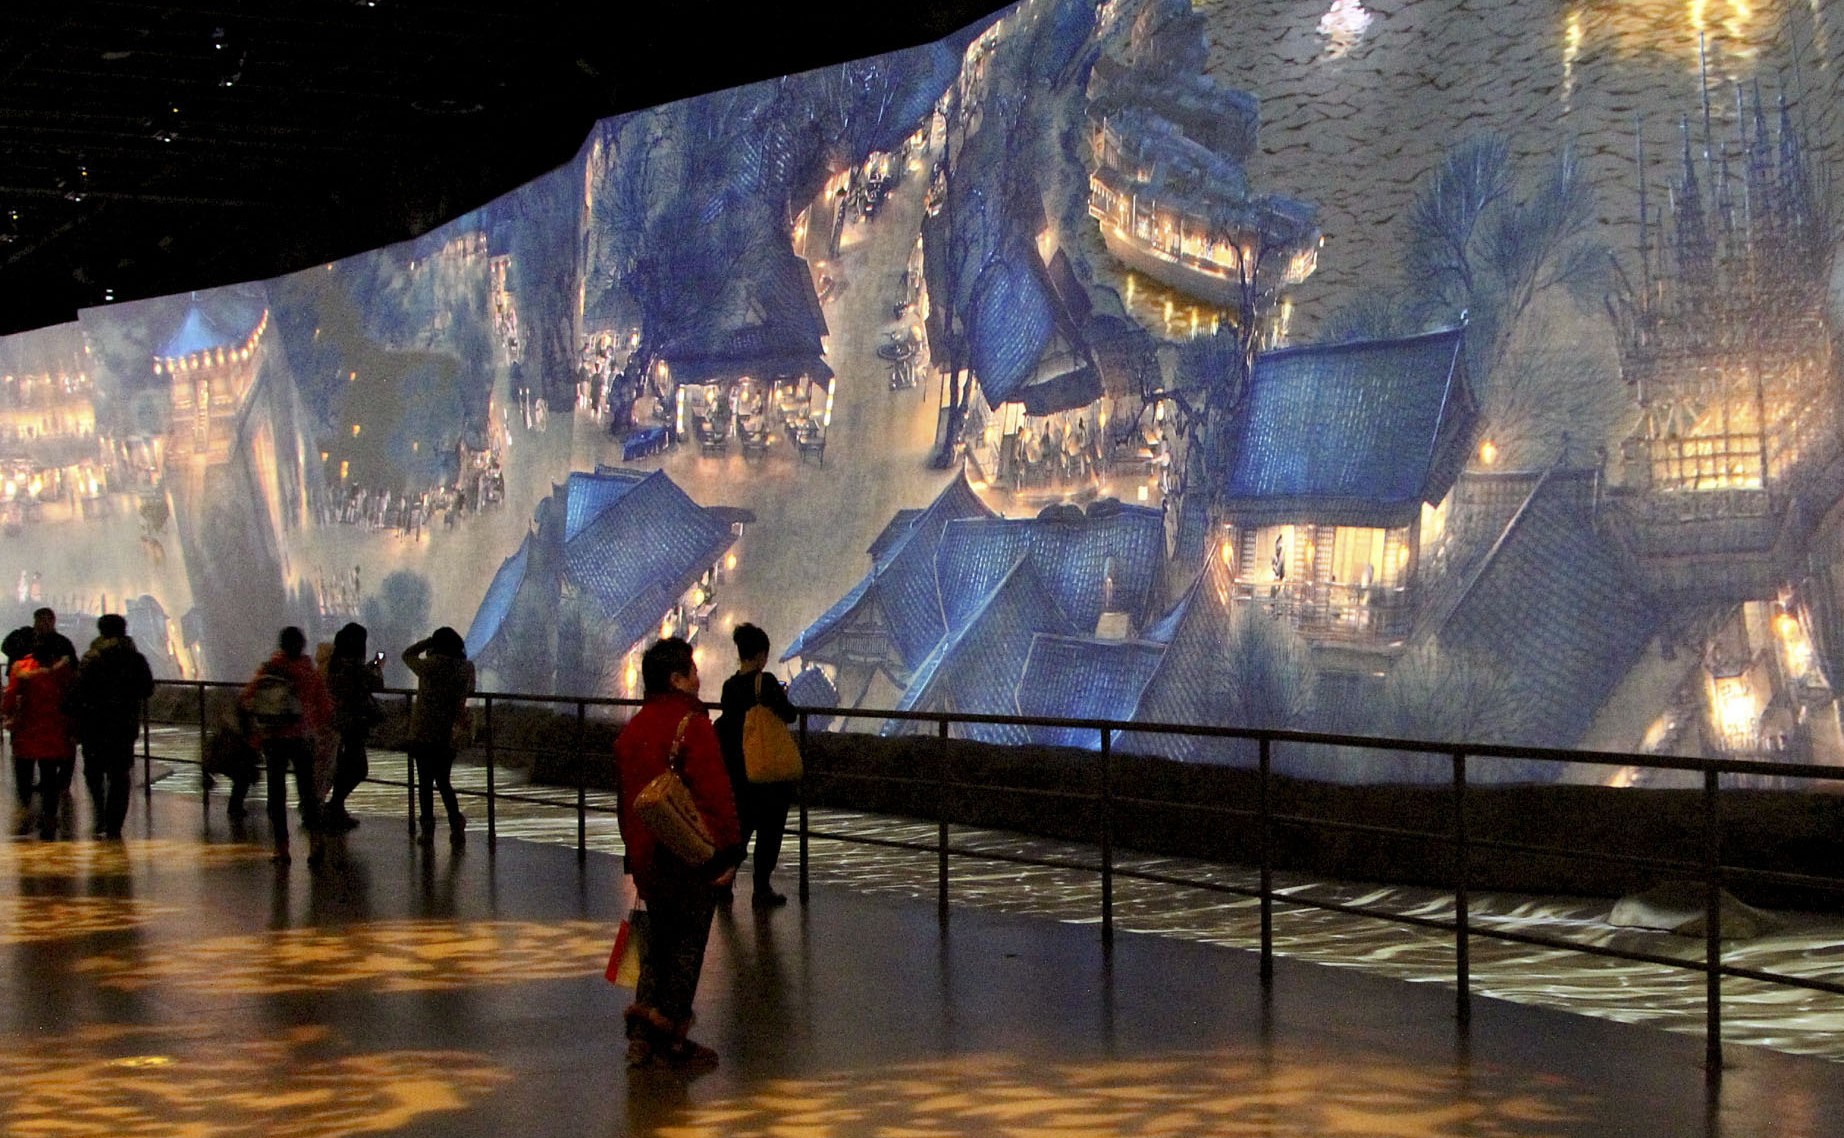 图片展示了几位参观者在观赏一幅巨大的、描绘古代山水建筑的壁画。环境昏暗，壁画细节丰富，色彩斑斓。